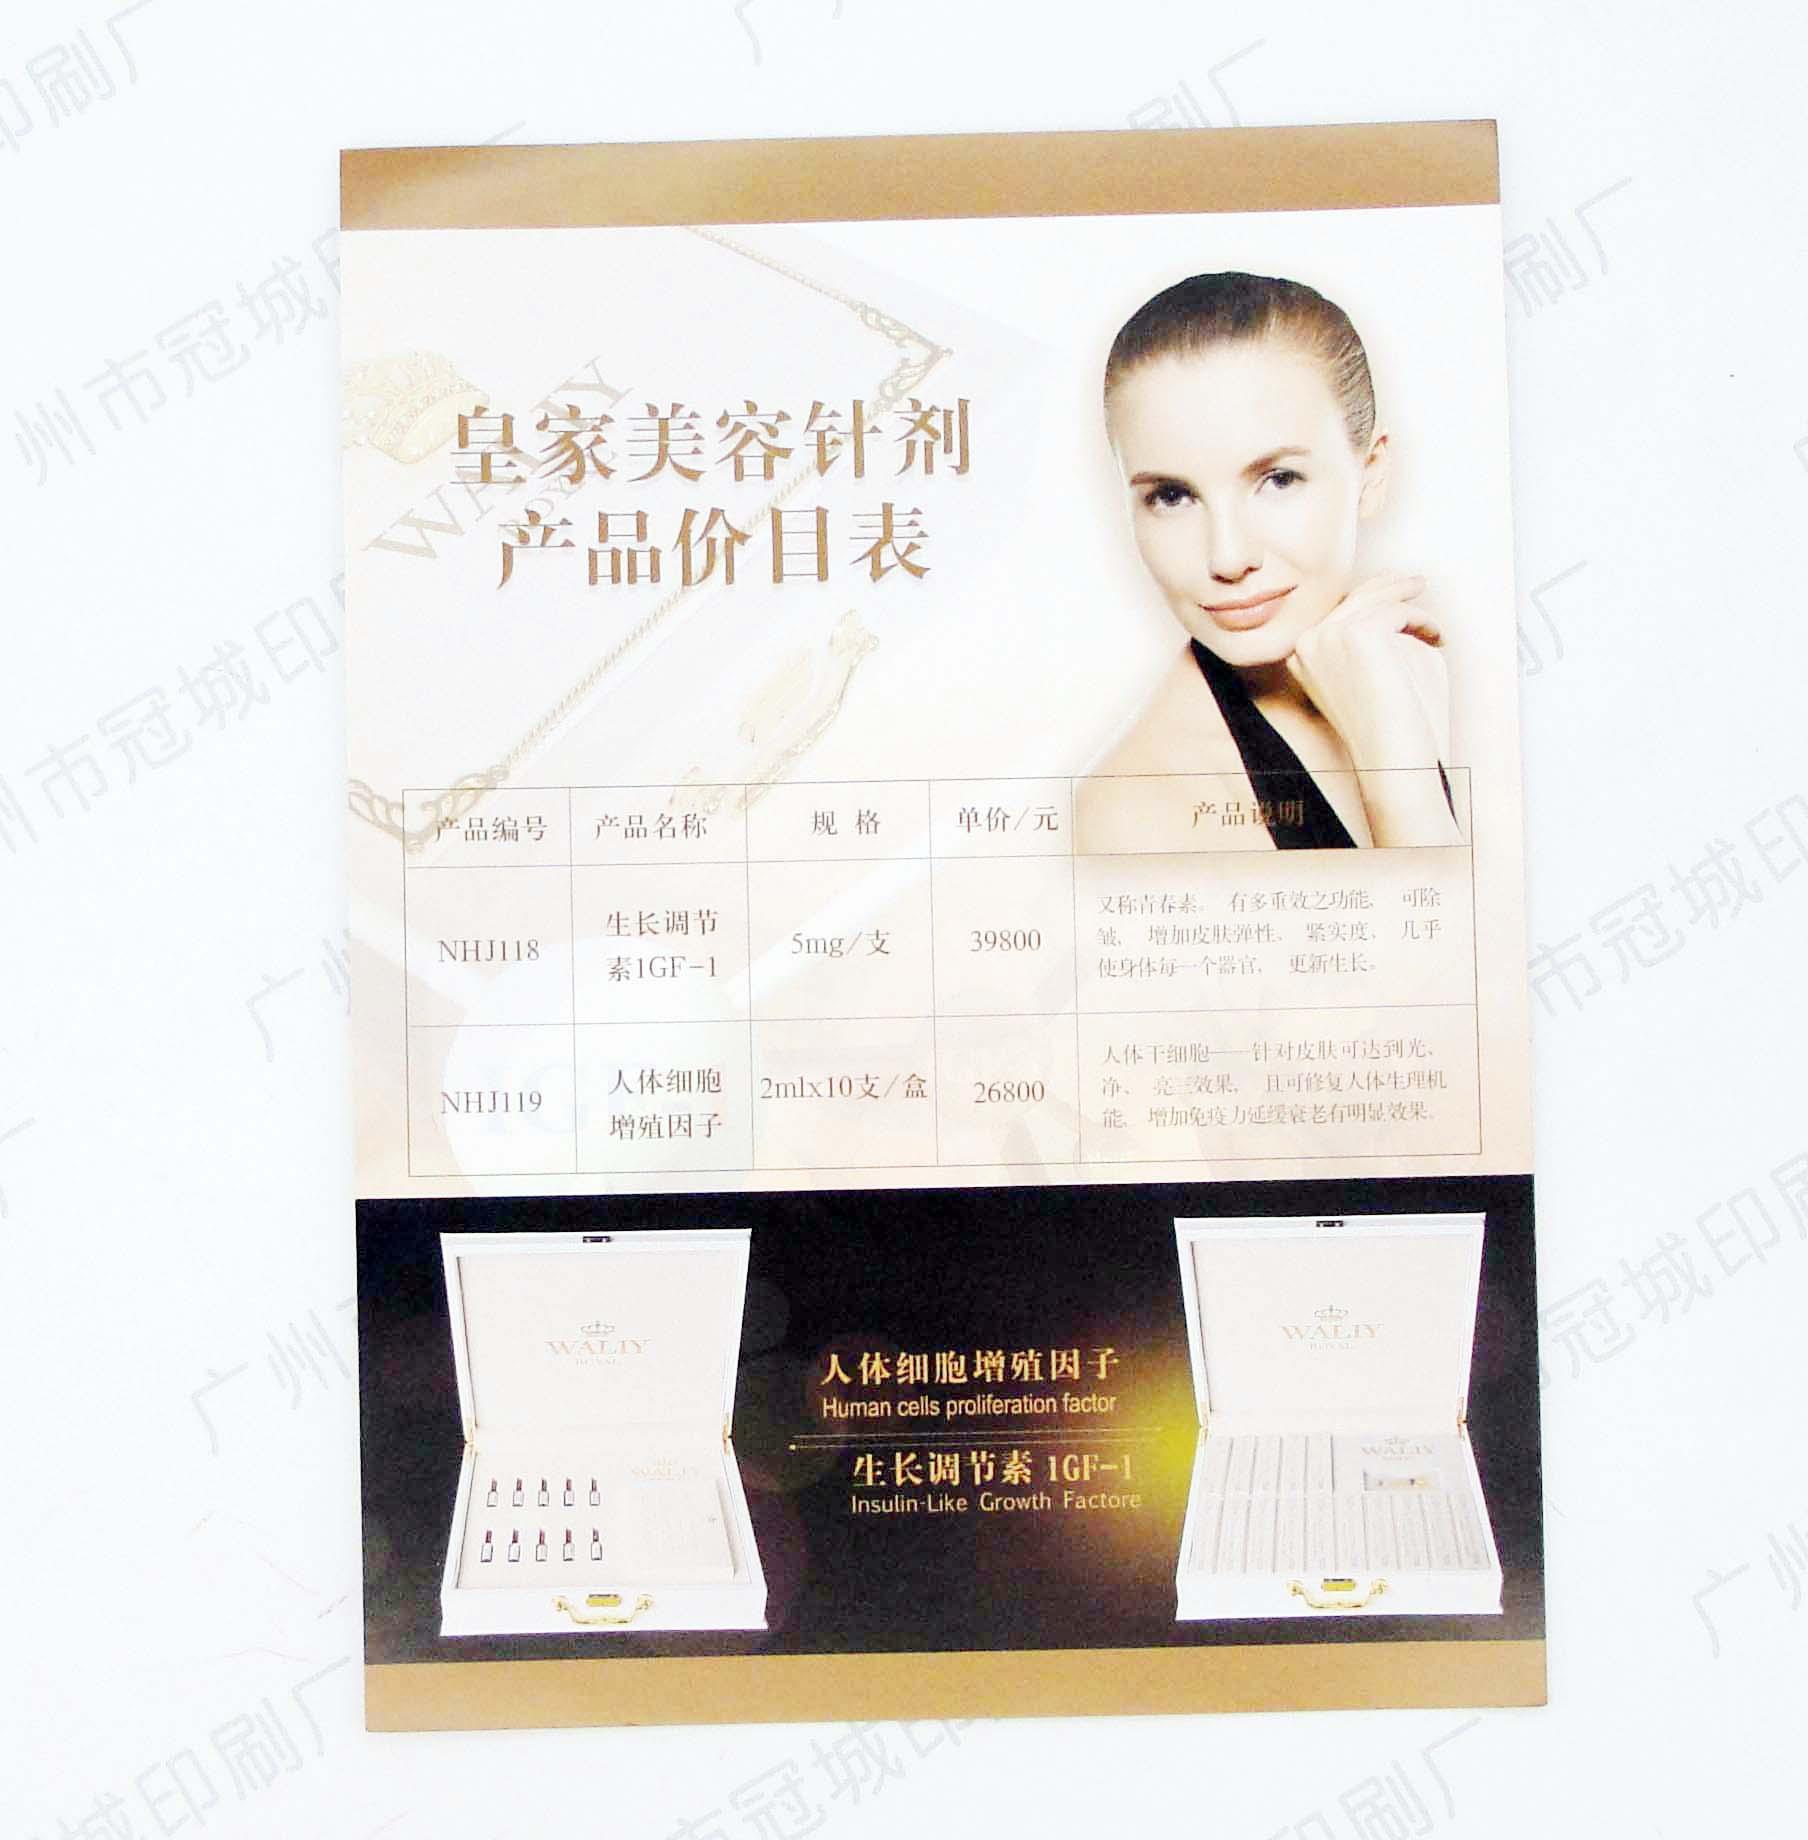 广州冠城印刷厂精美宣传单1万张580元